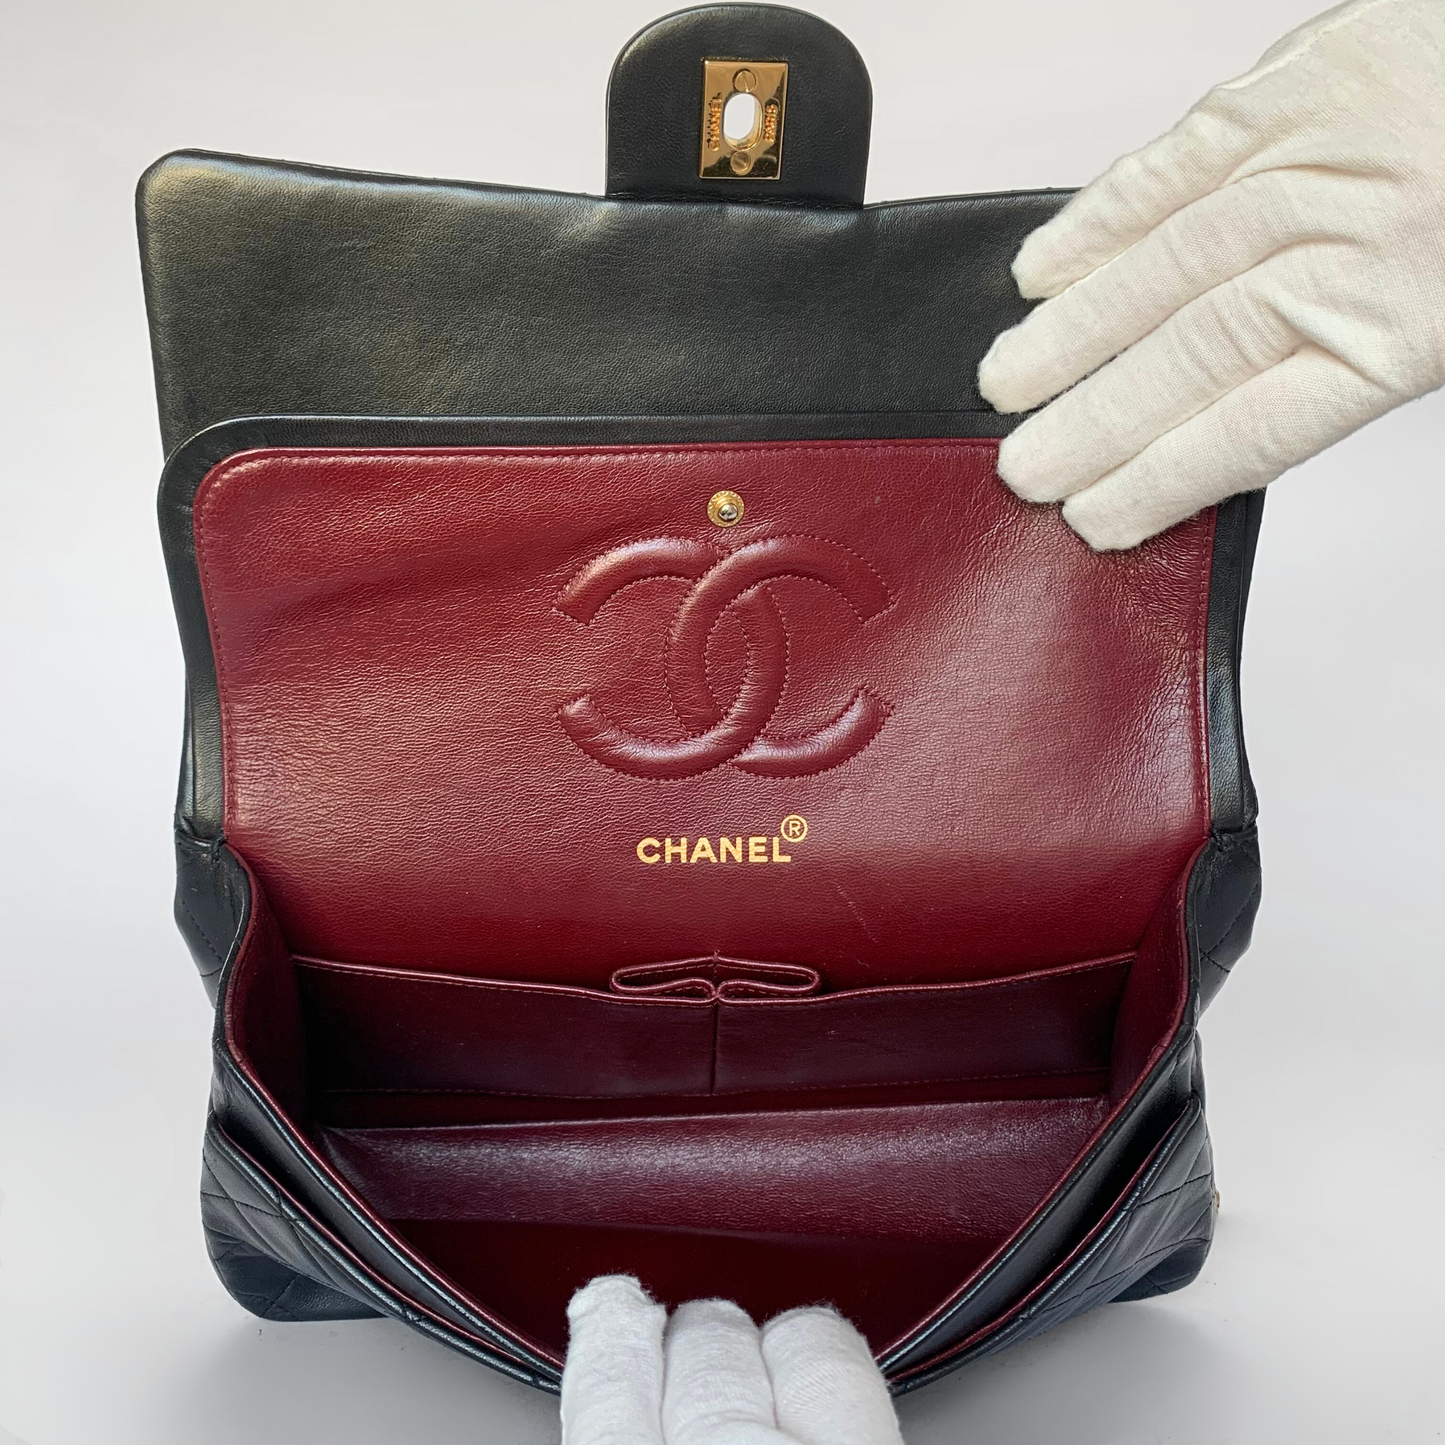 Chanel Chanel Double classique Flap Bag Cuir d'Agneau Moyen - Sac porté épaule - Etoile Luxury Vintage